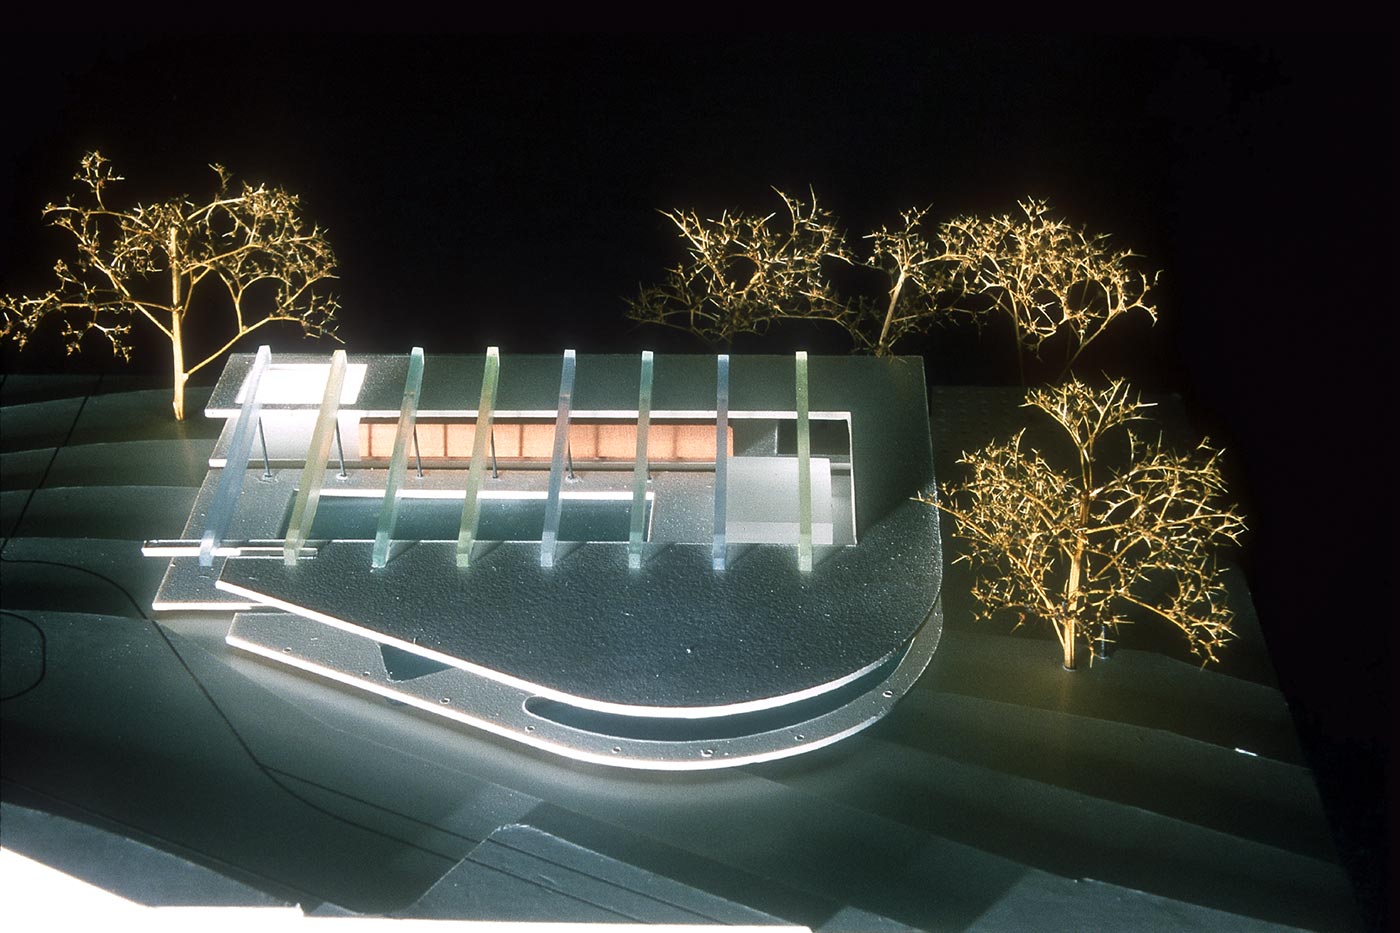 Bild von dem Modell des Hallenbads Altdorf - header